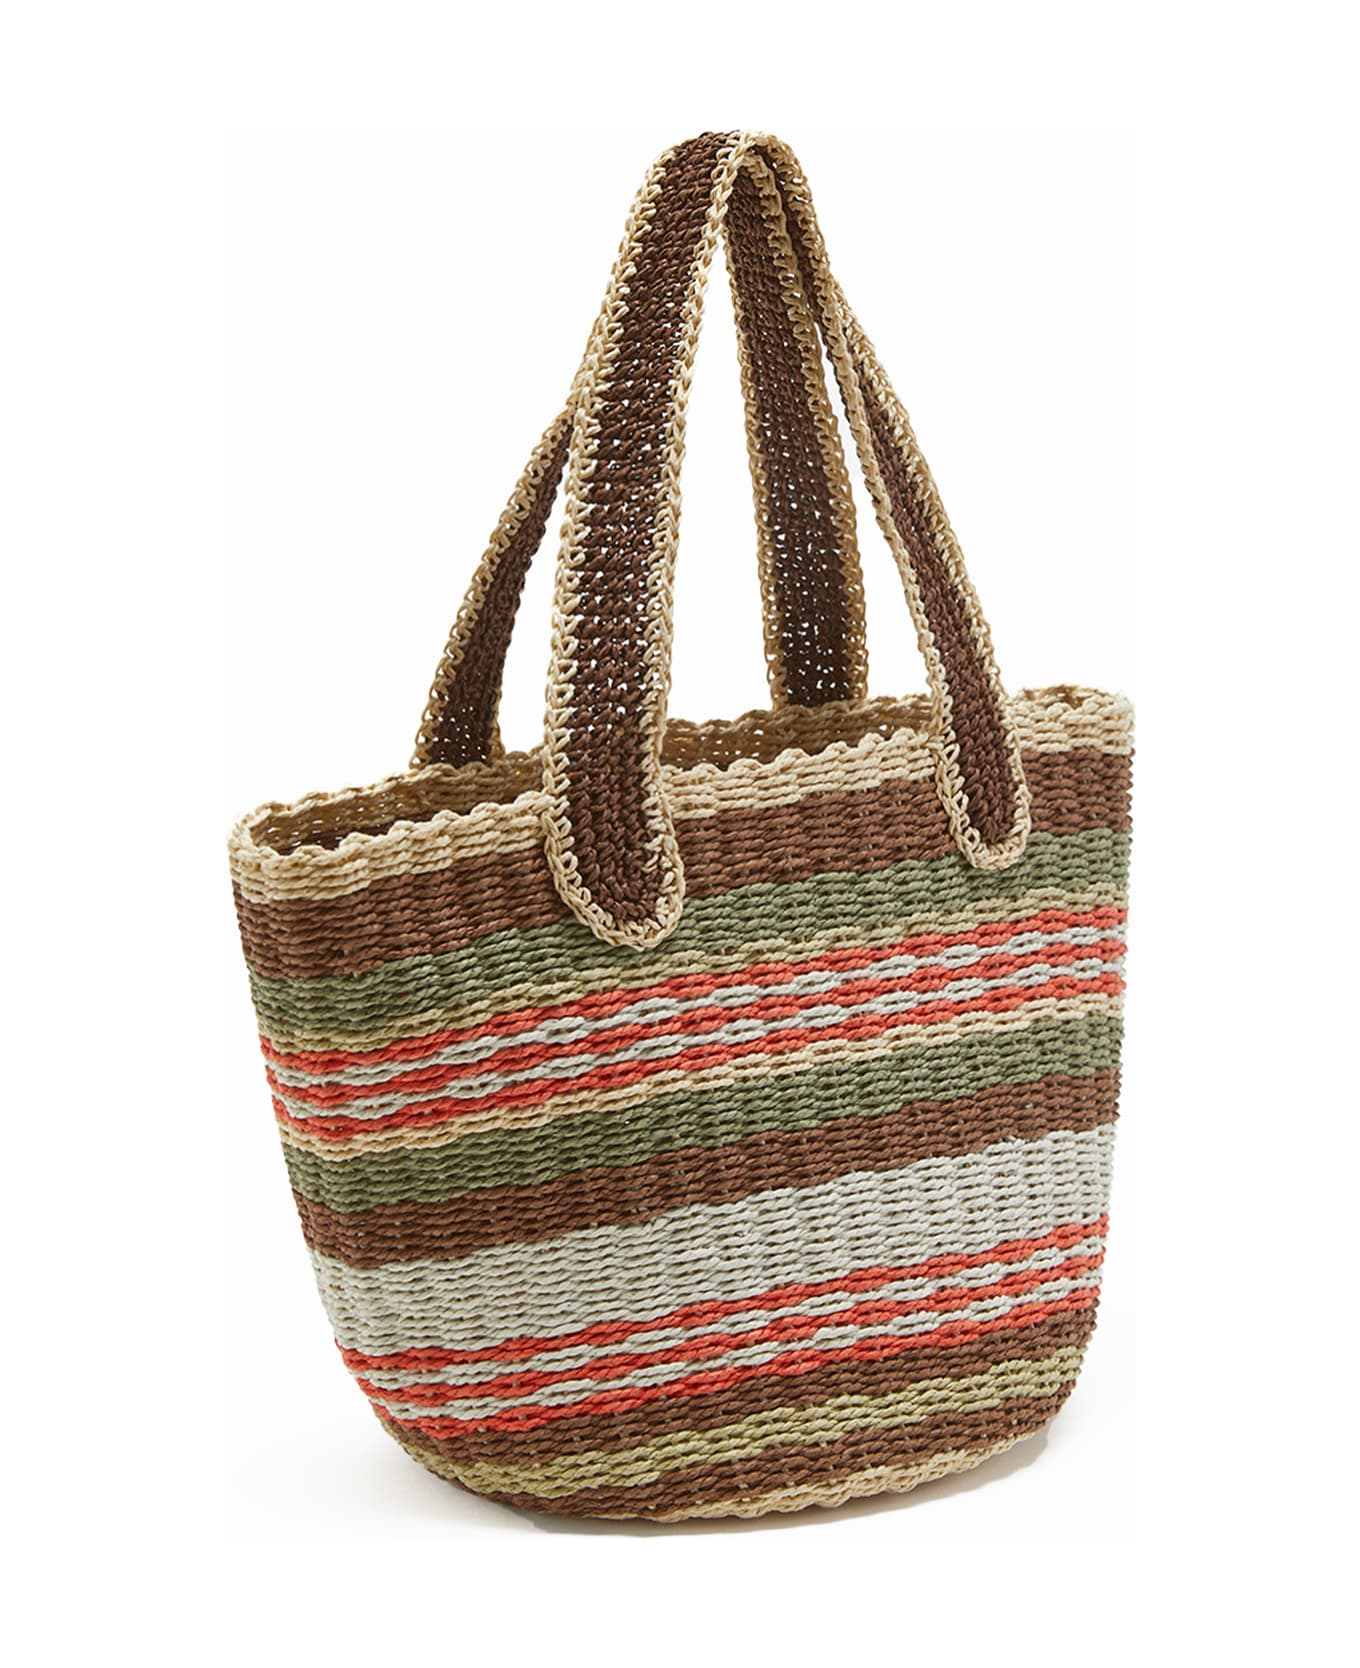 Malìparmi Shopping Bag In Hand-woven Multicolored Raffia - MARRONE/BEIGE/ARANCIO トートバッグ